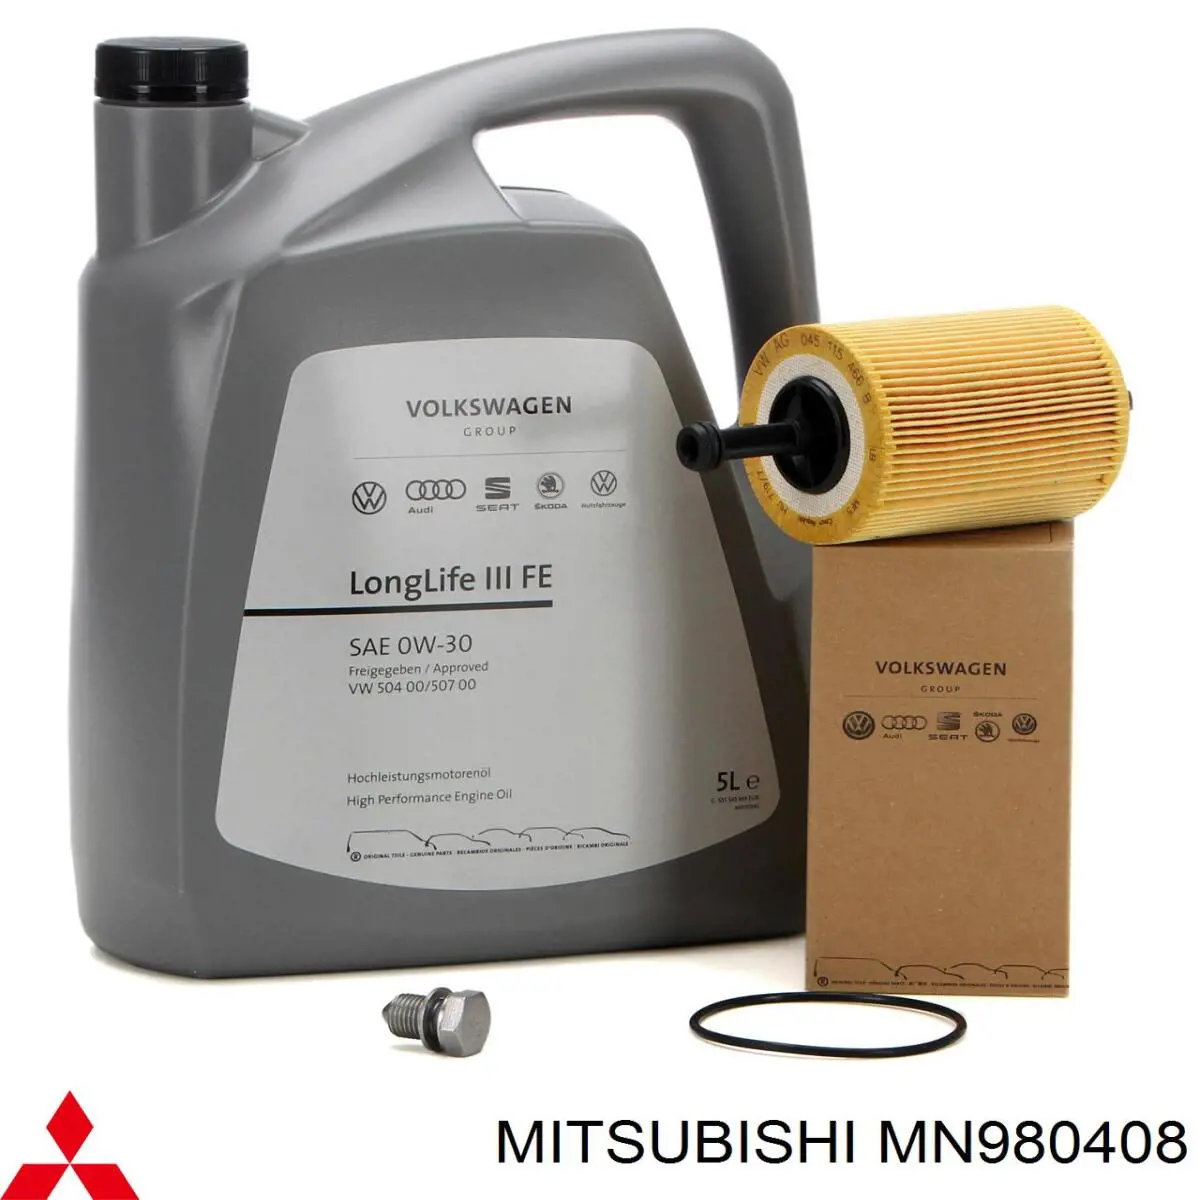 MN980408 Mitsubishi filtro de aceite